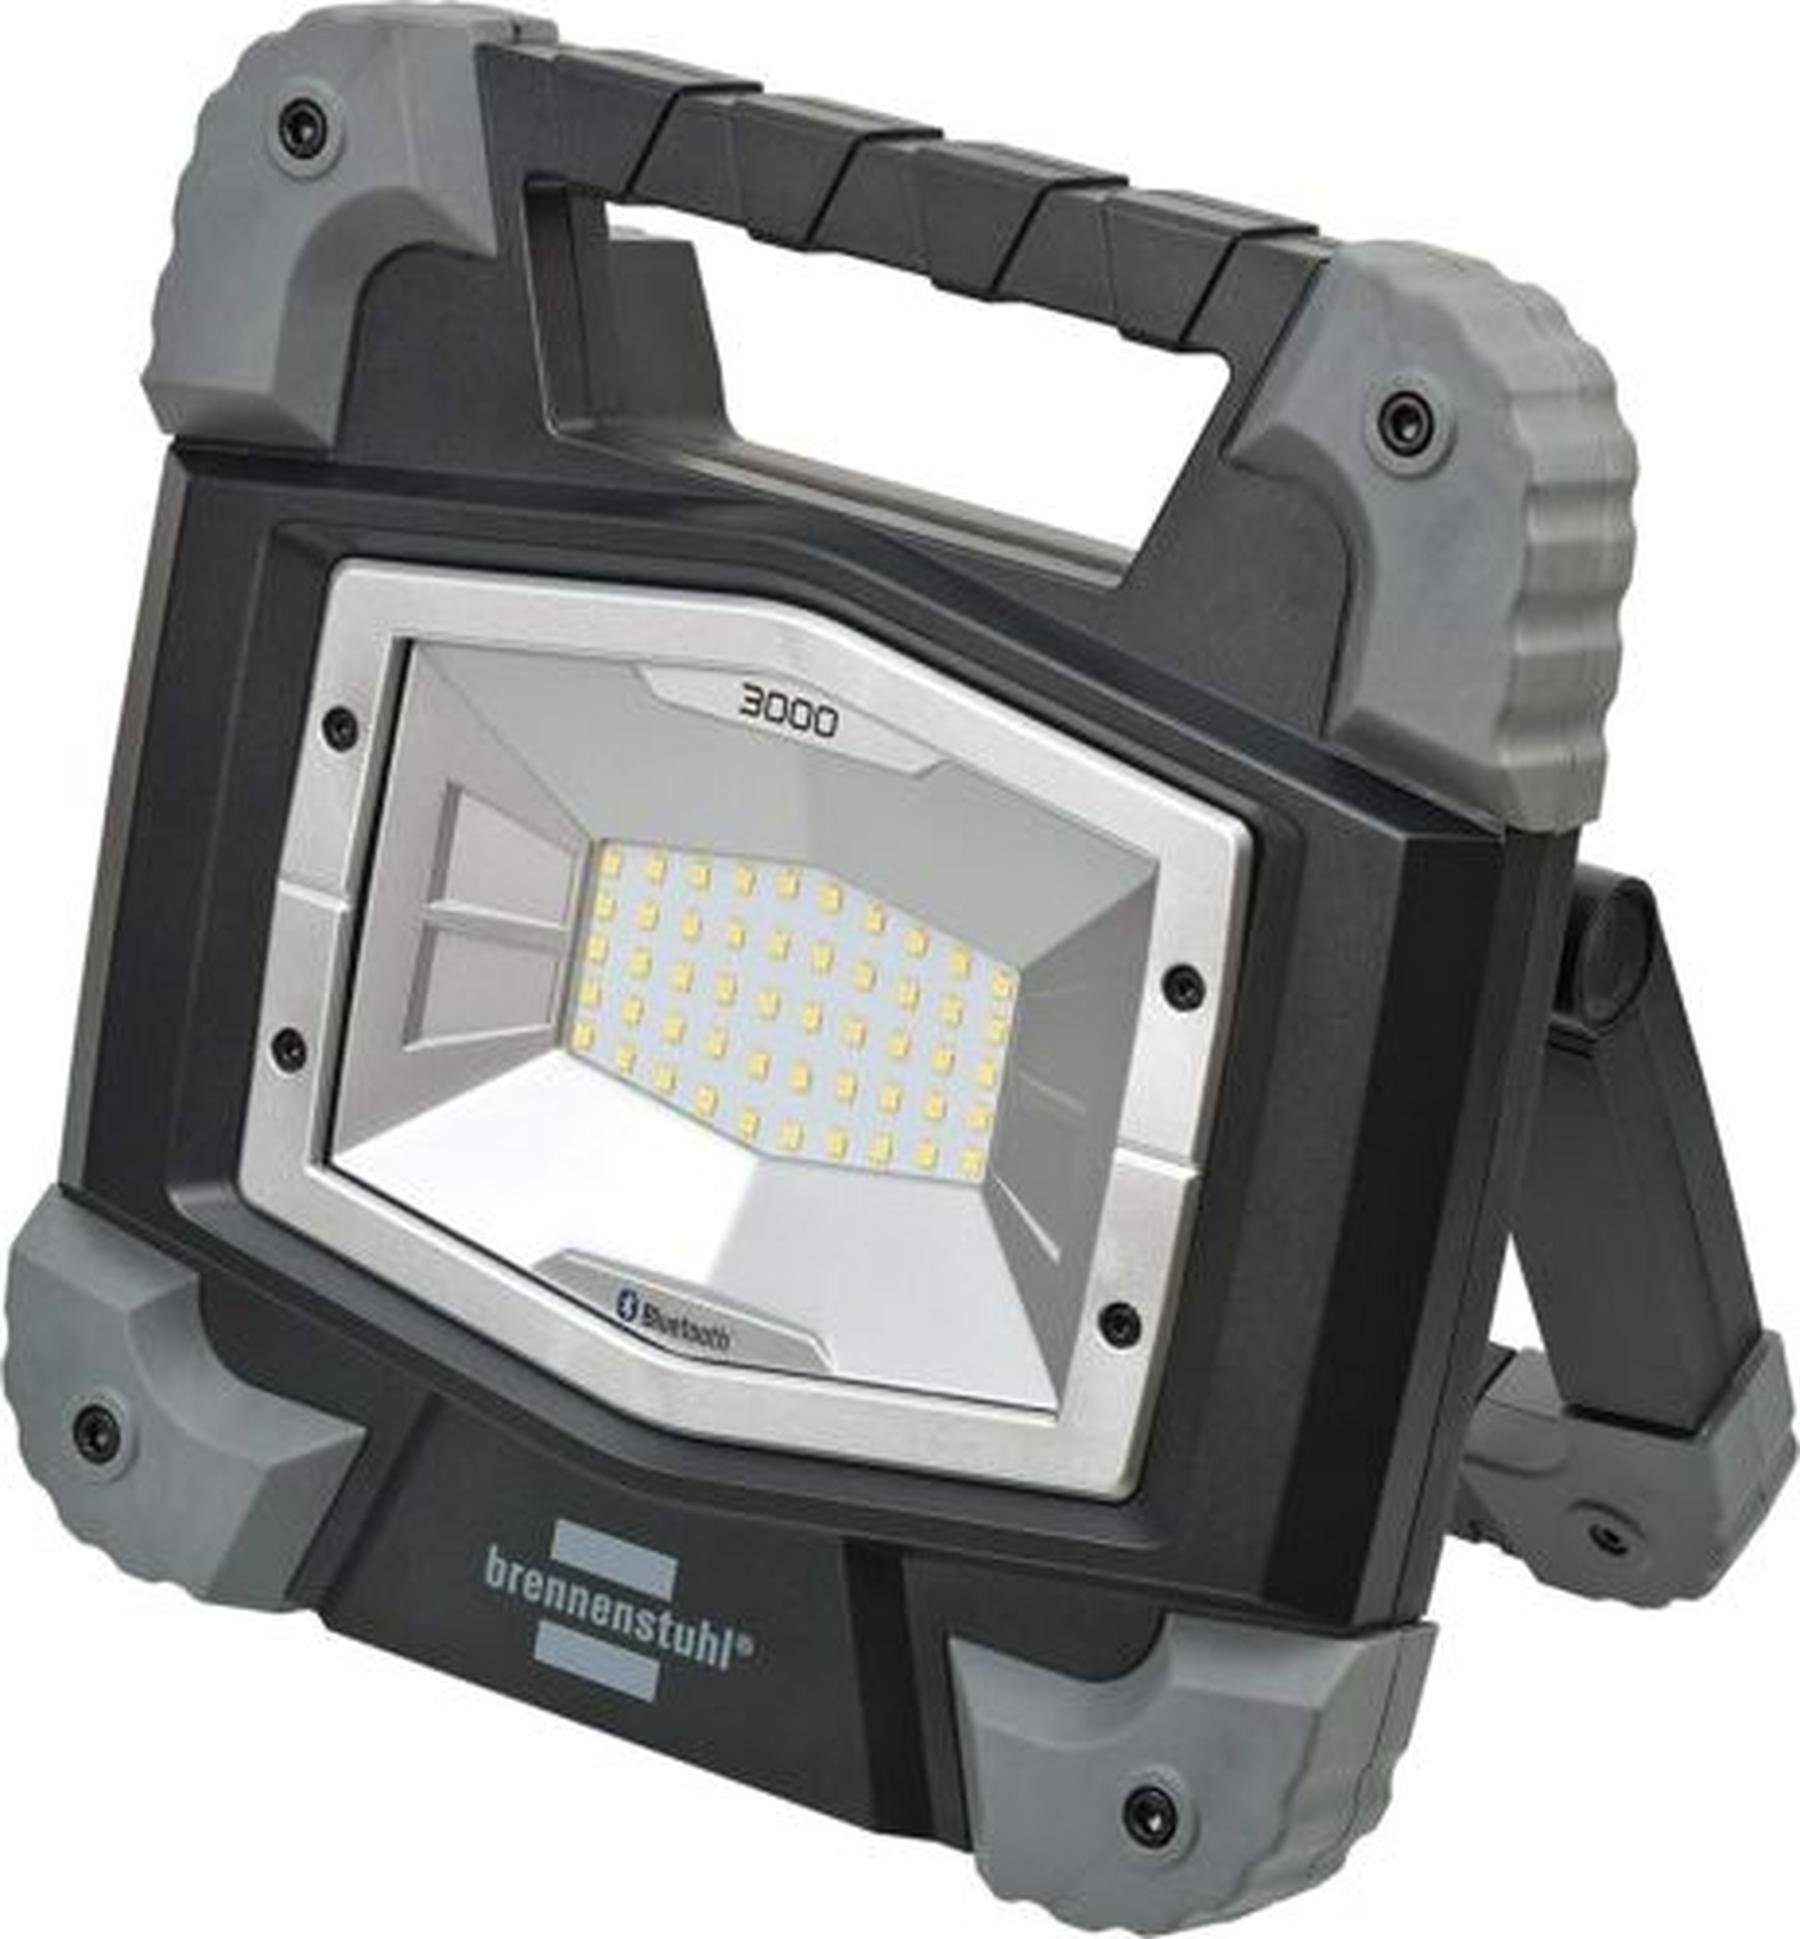 Brennenstuhl LED Taschenlampe Brennenstuhl Mobiler Bluetooth LED Strahler  TORAN 3000 MB